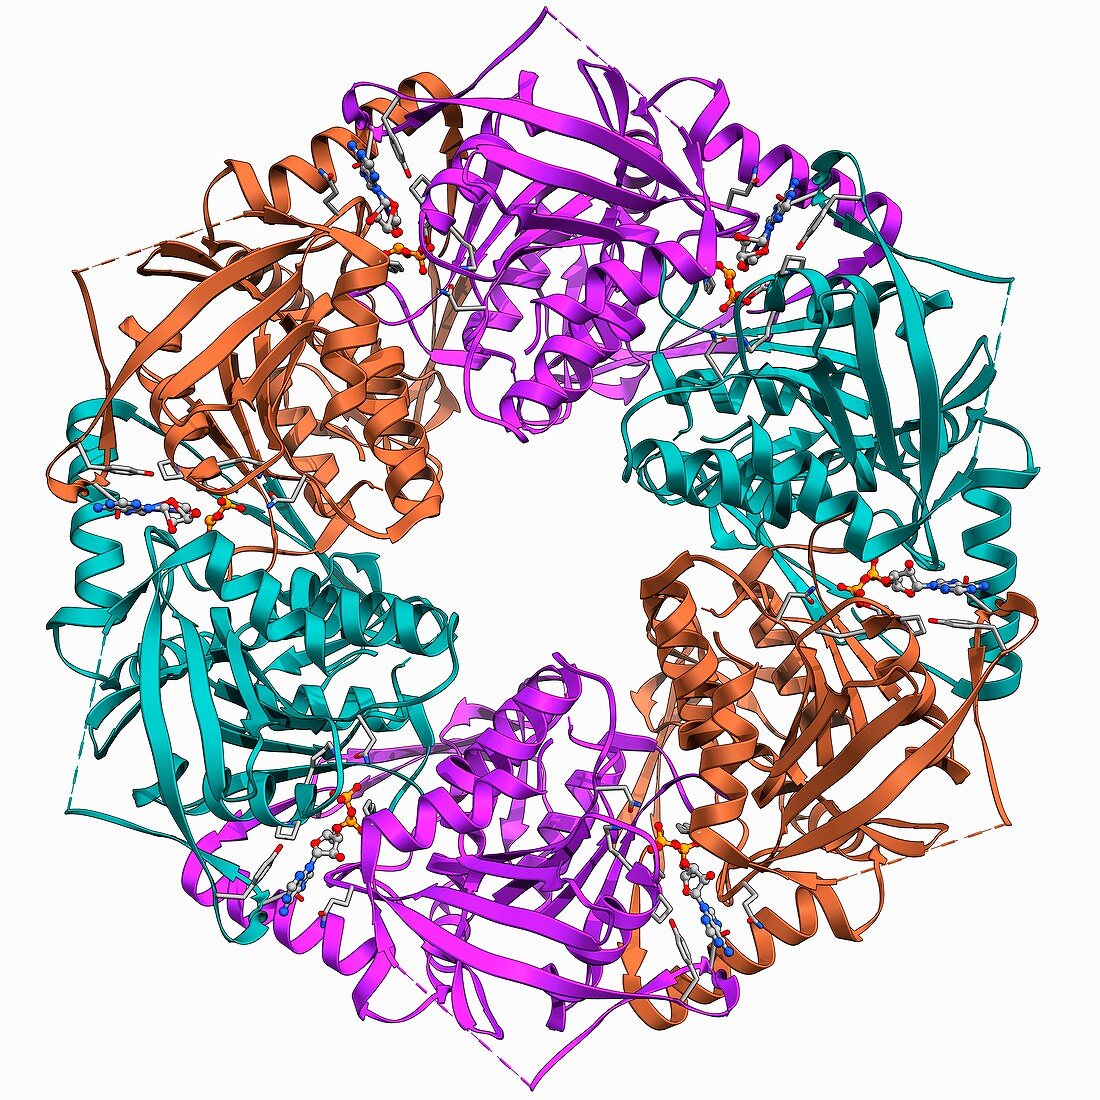 Bacteriophage ATPase molecule